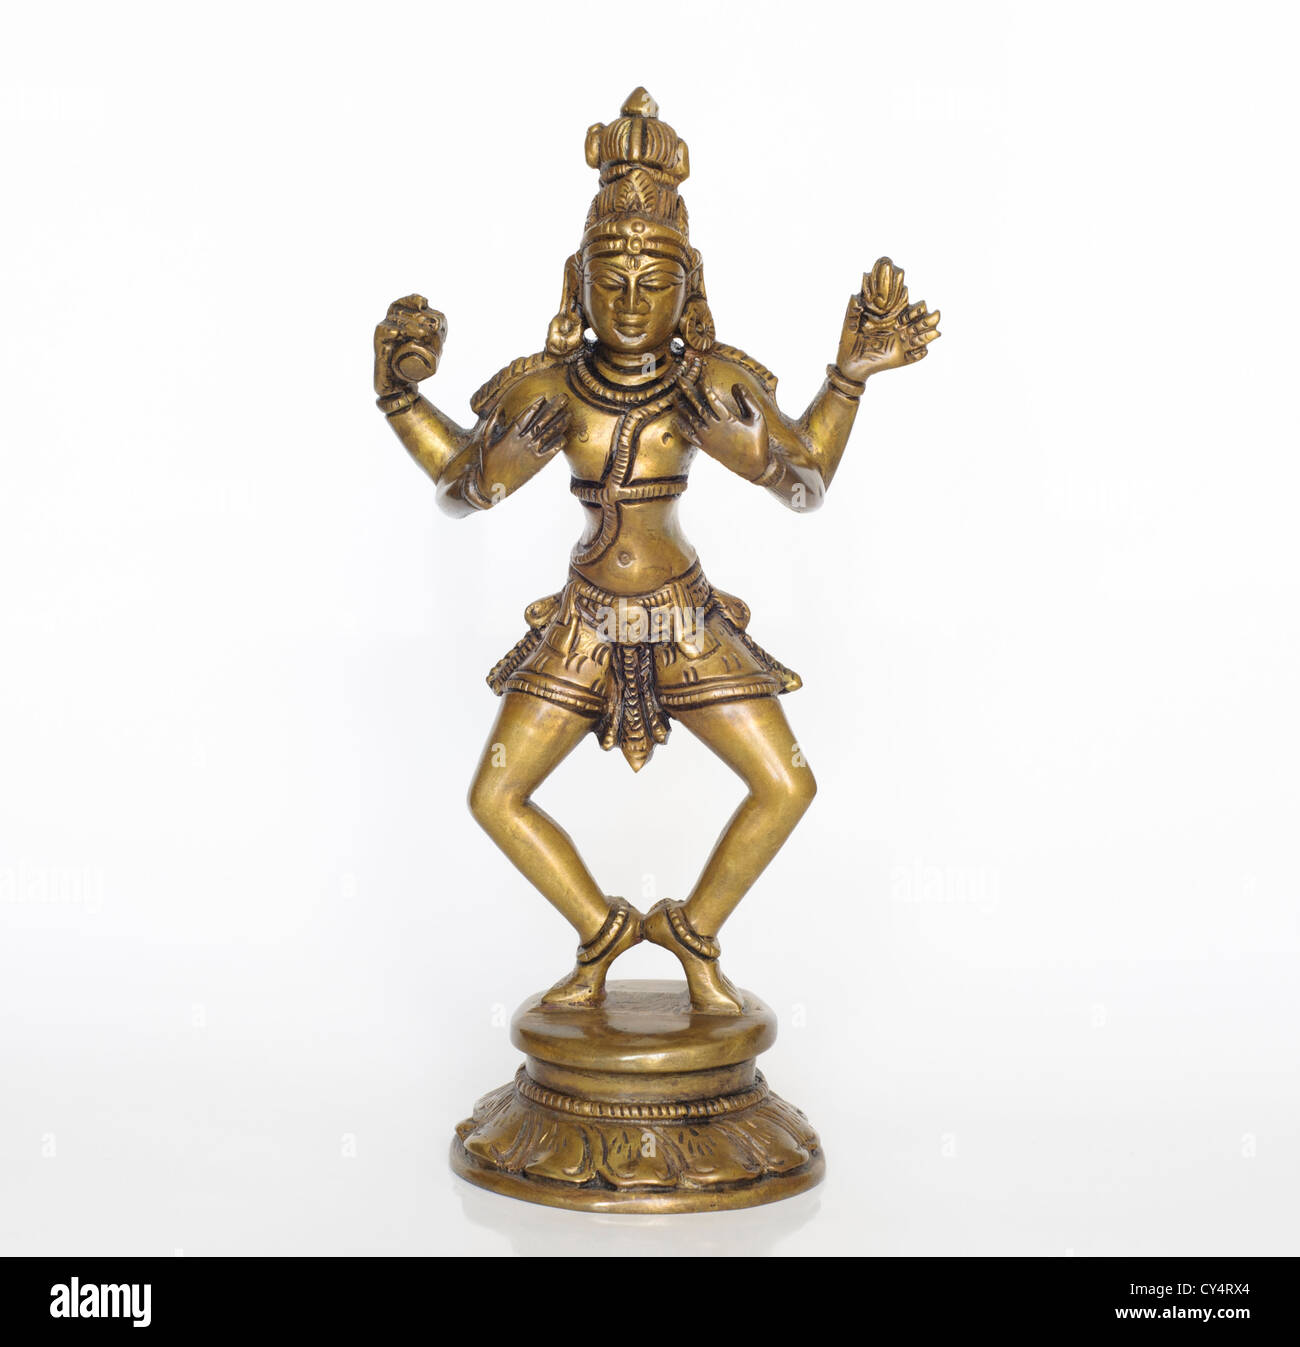 Pequeña estatuilla de bronce del dios hindú Shiva Foto de stock